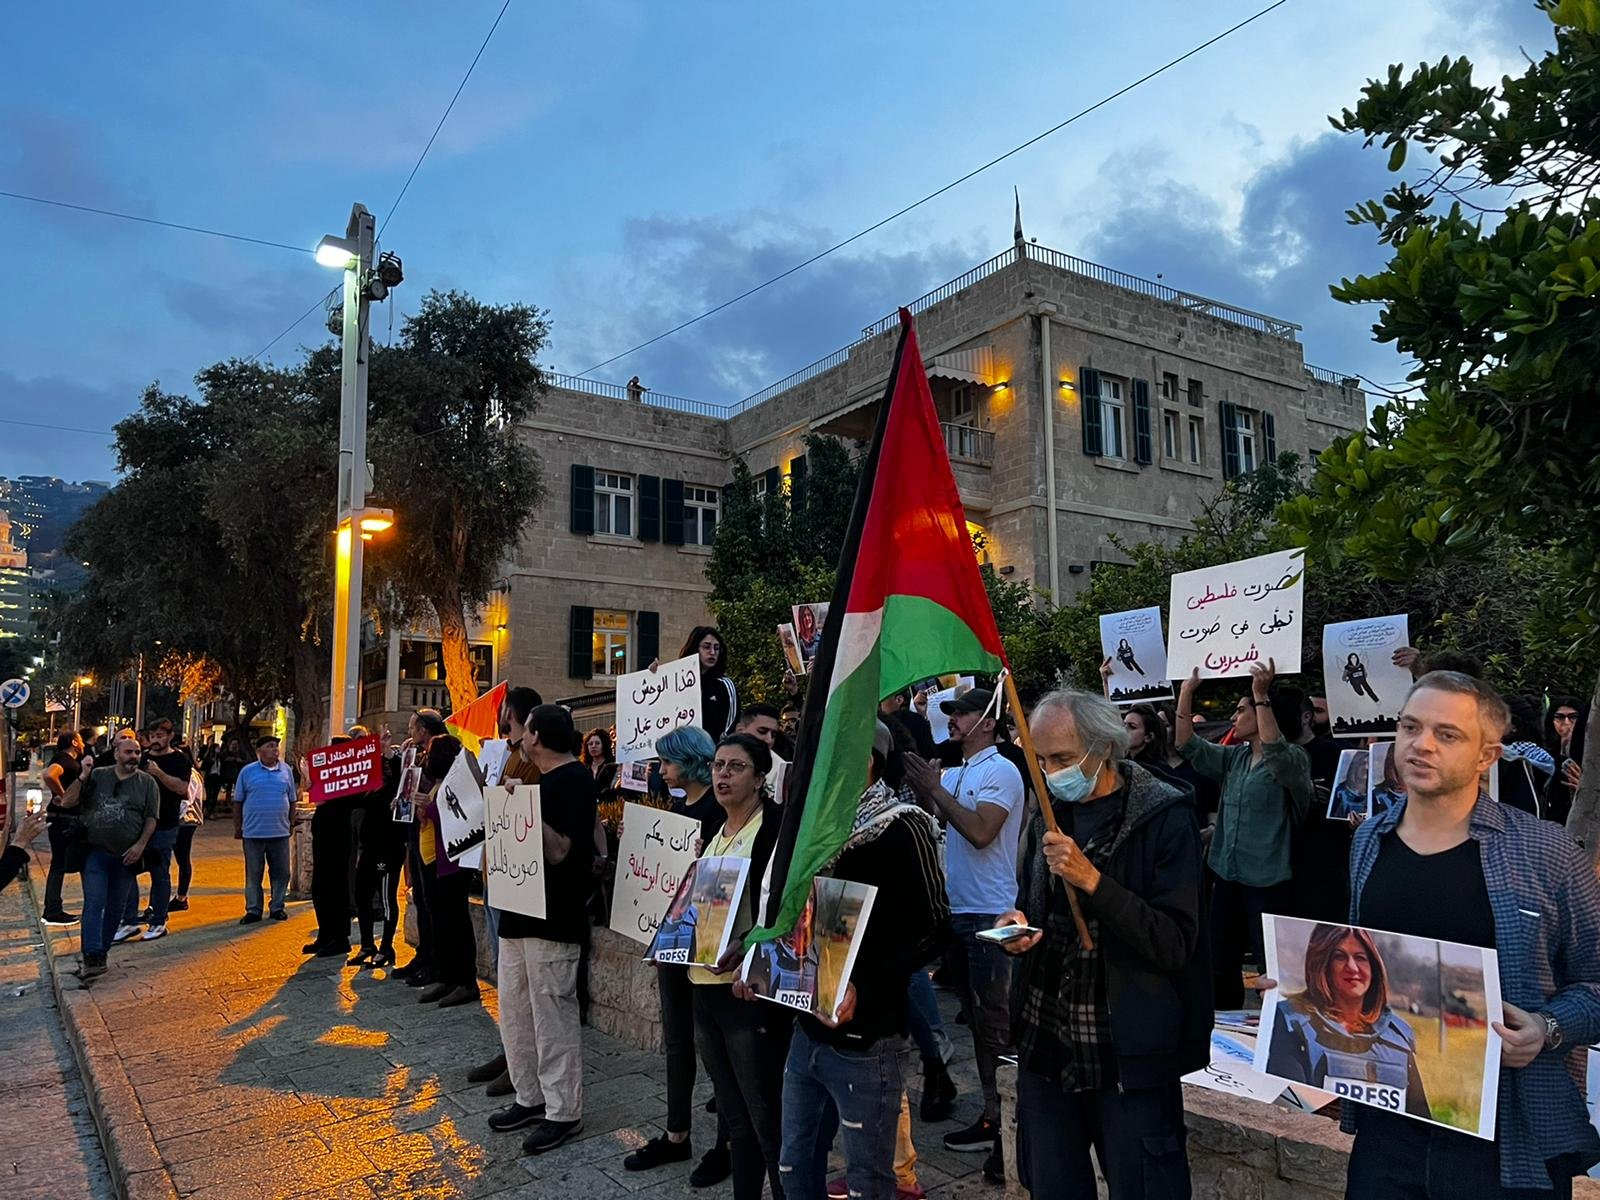 صور الشهيدة وأعلام فلسطينية وإغلاق شارع| مظاهرة حاشدة في حيفا في أعقاب اغتيال شيرين أبو عاقلة-7